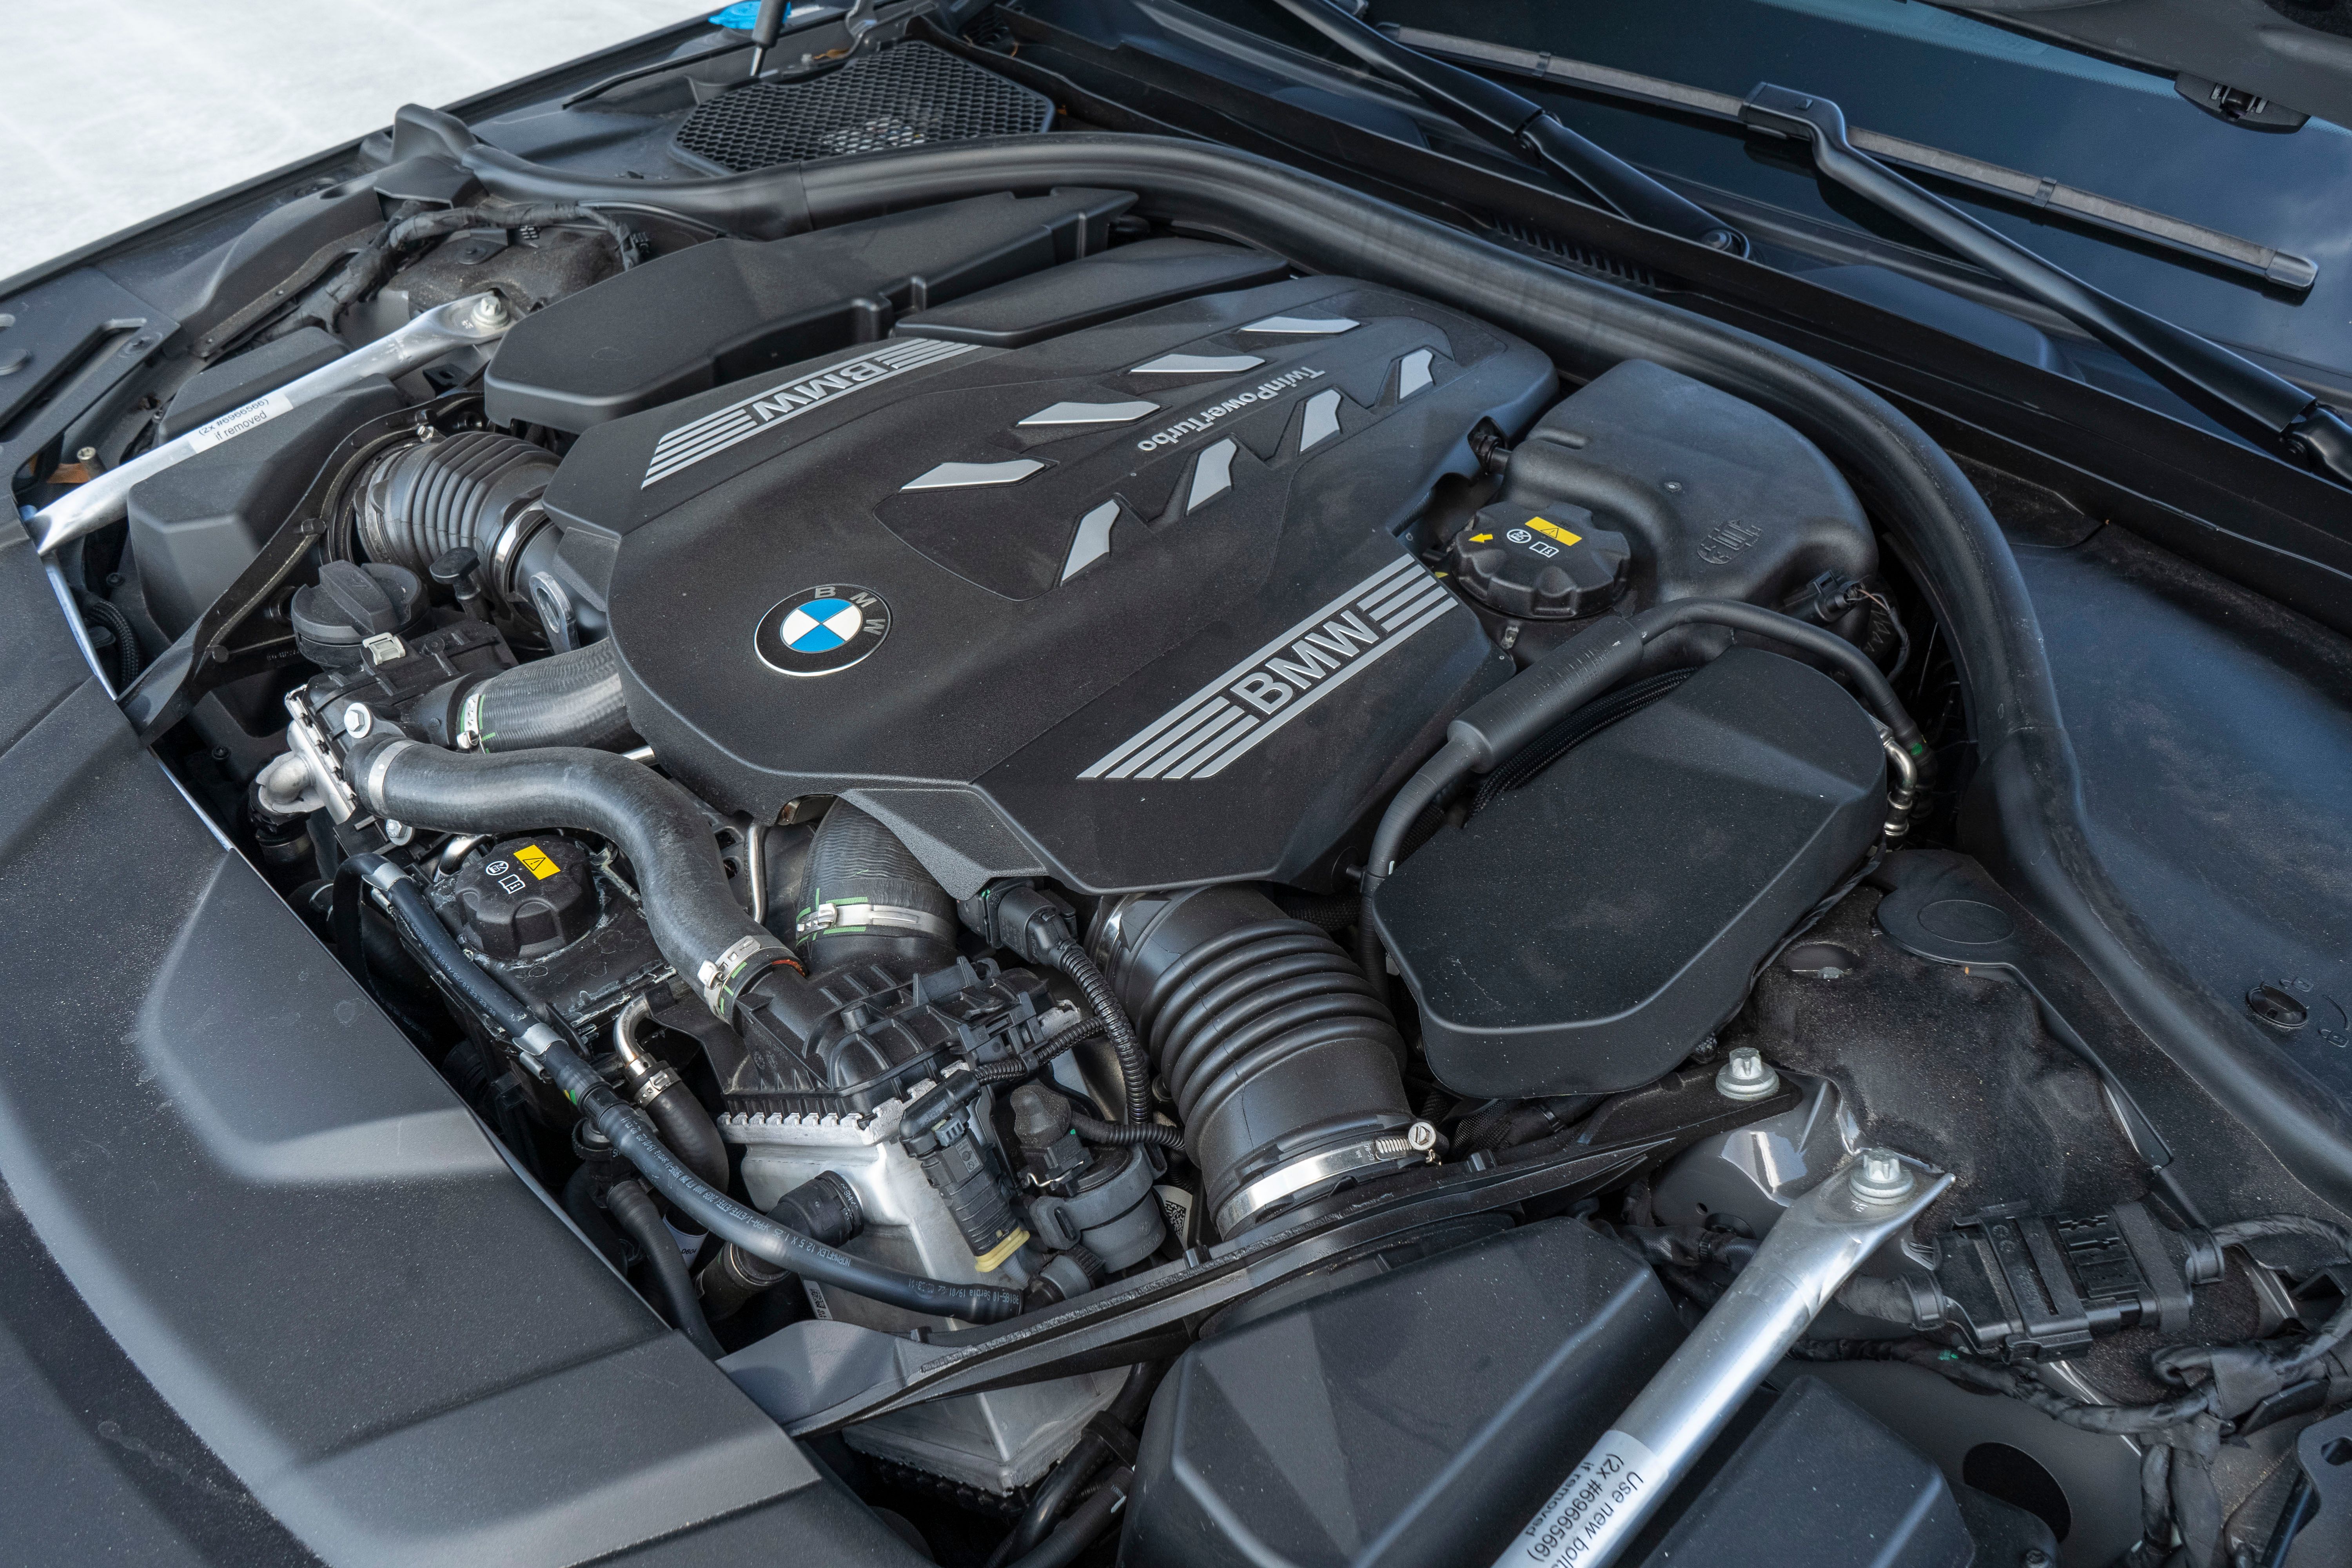 2020 BMW 750i - Driven